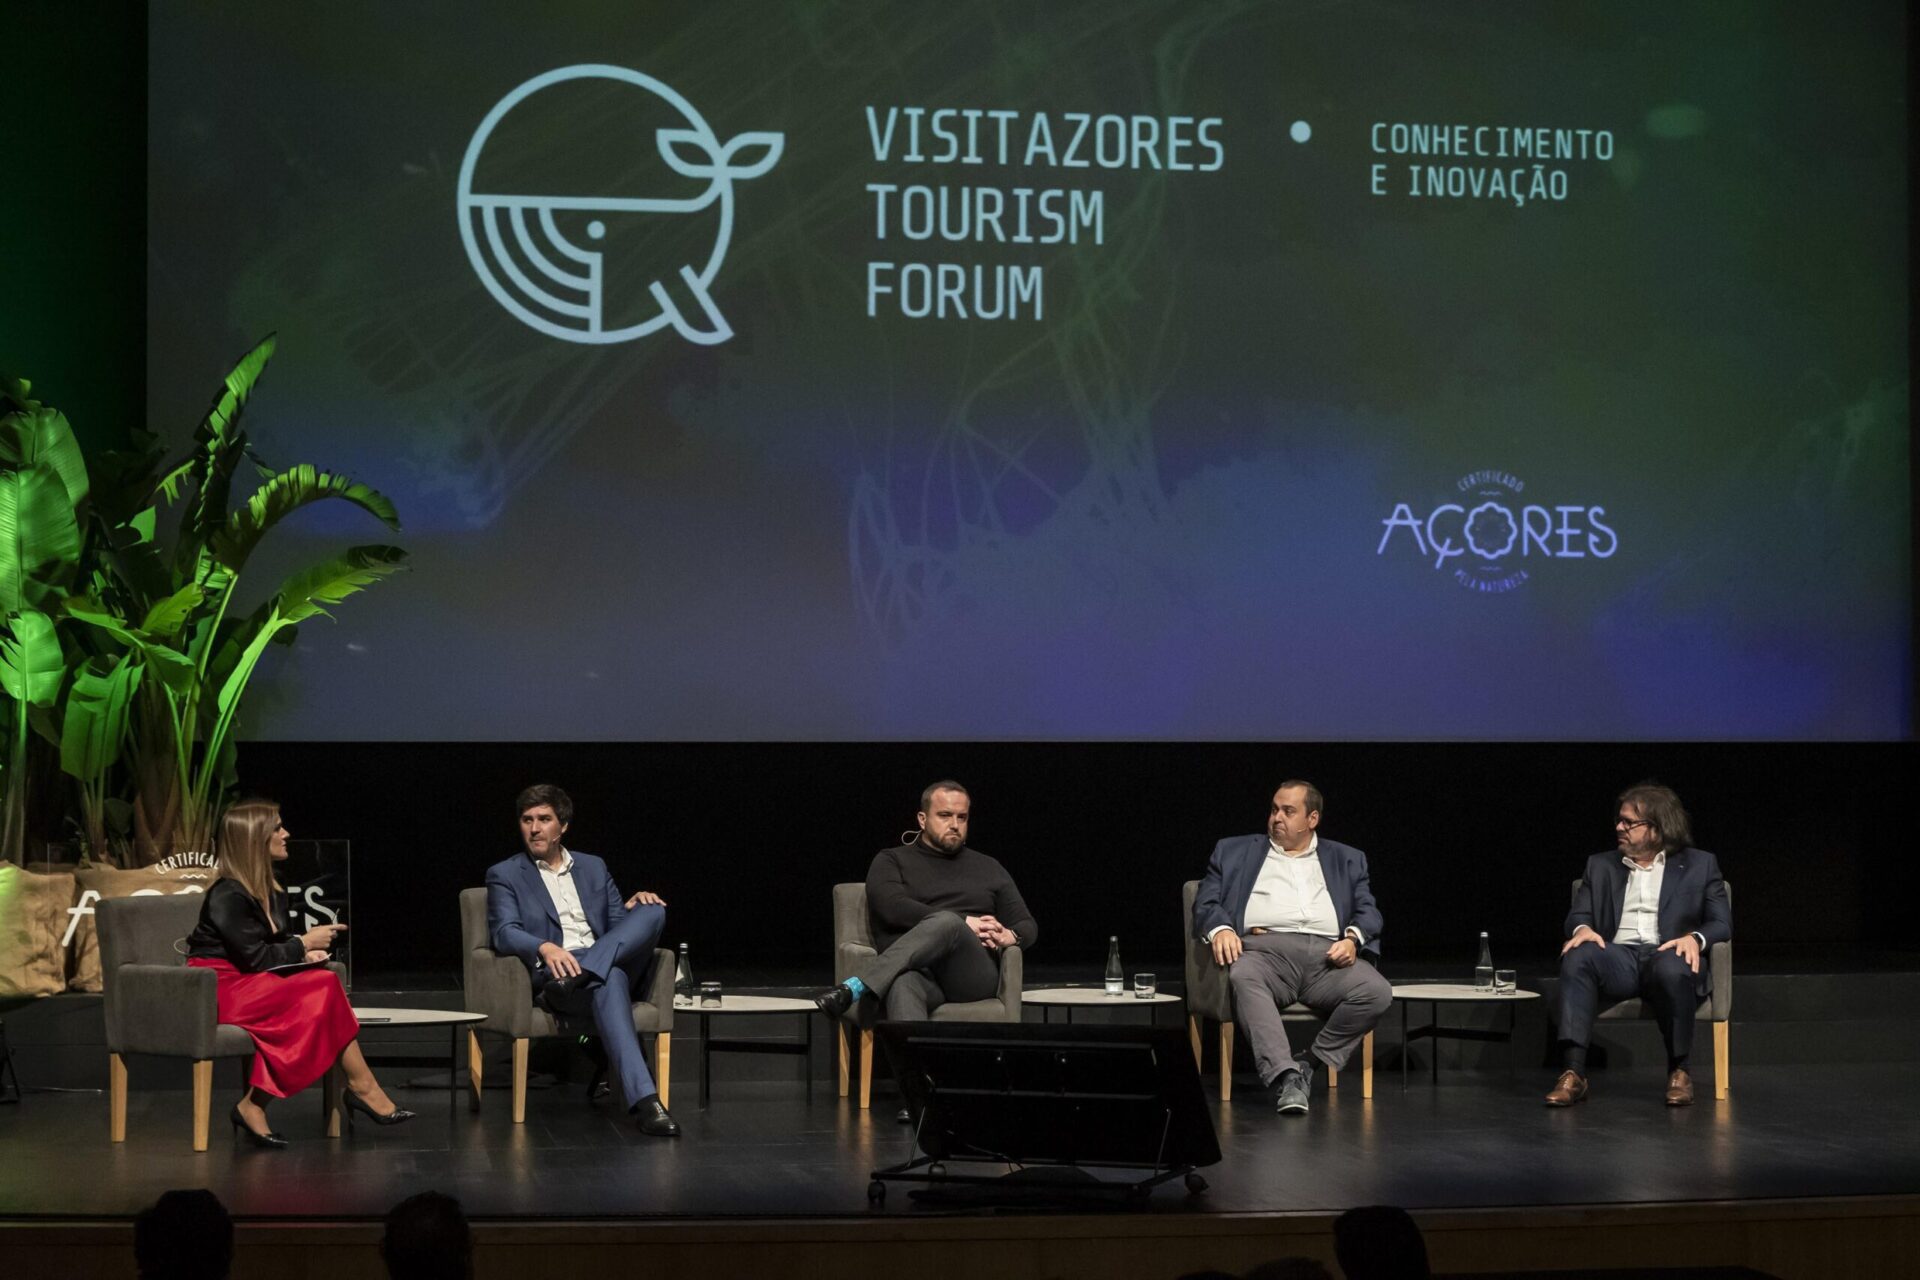 Especialistas vão apontar caminhos para o futuro da promoção turística no 1.º VisitAzores Tourism Forum